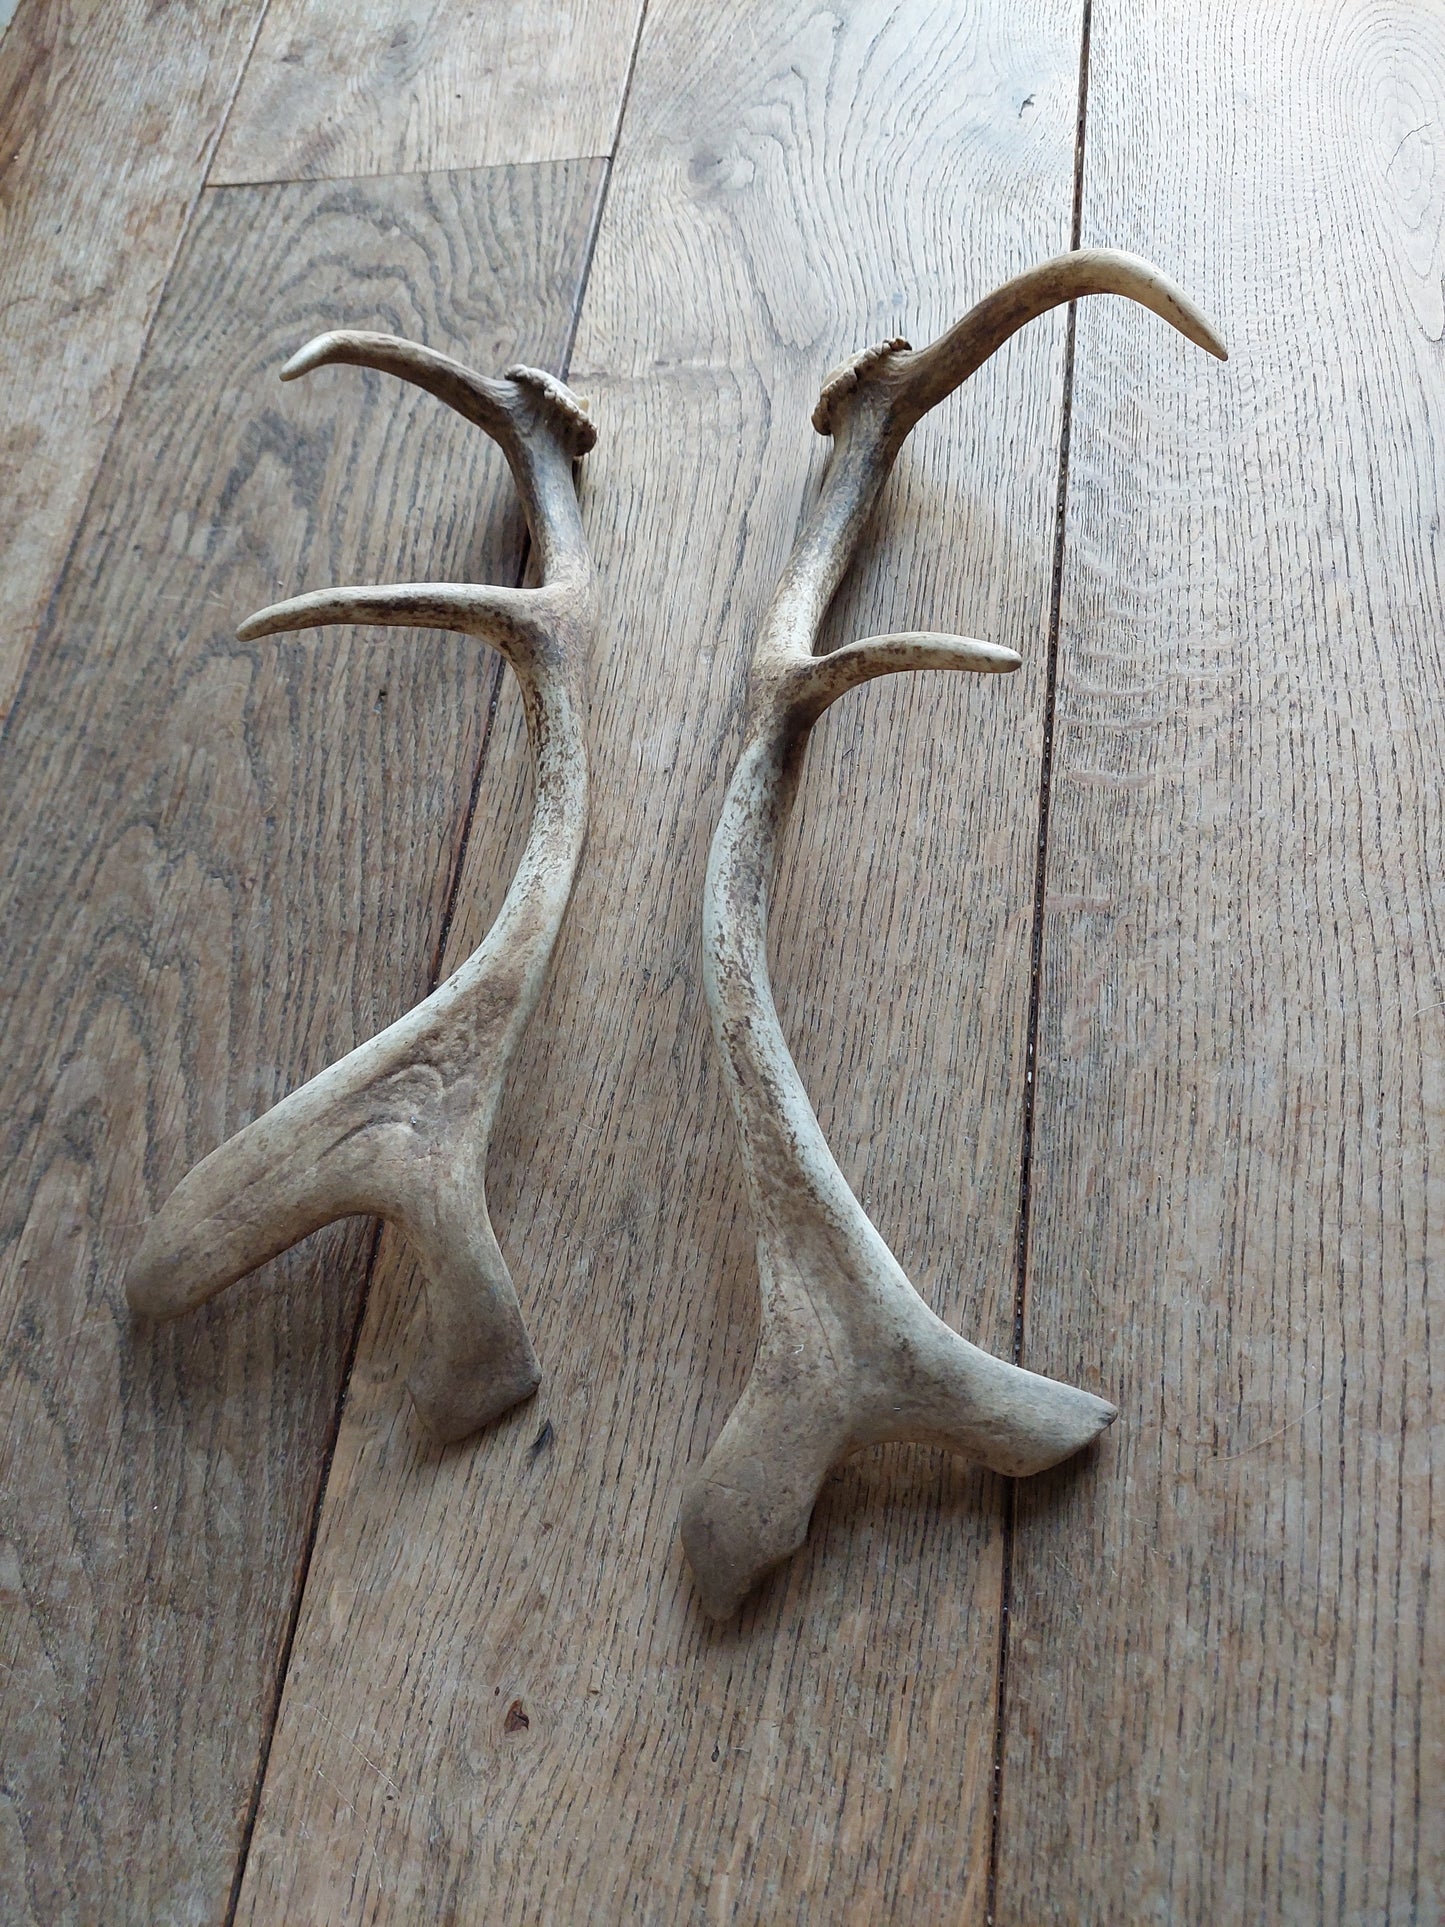 Fallow deer antlers, set of two